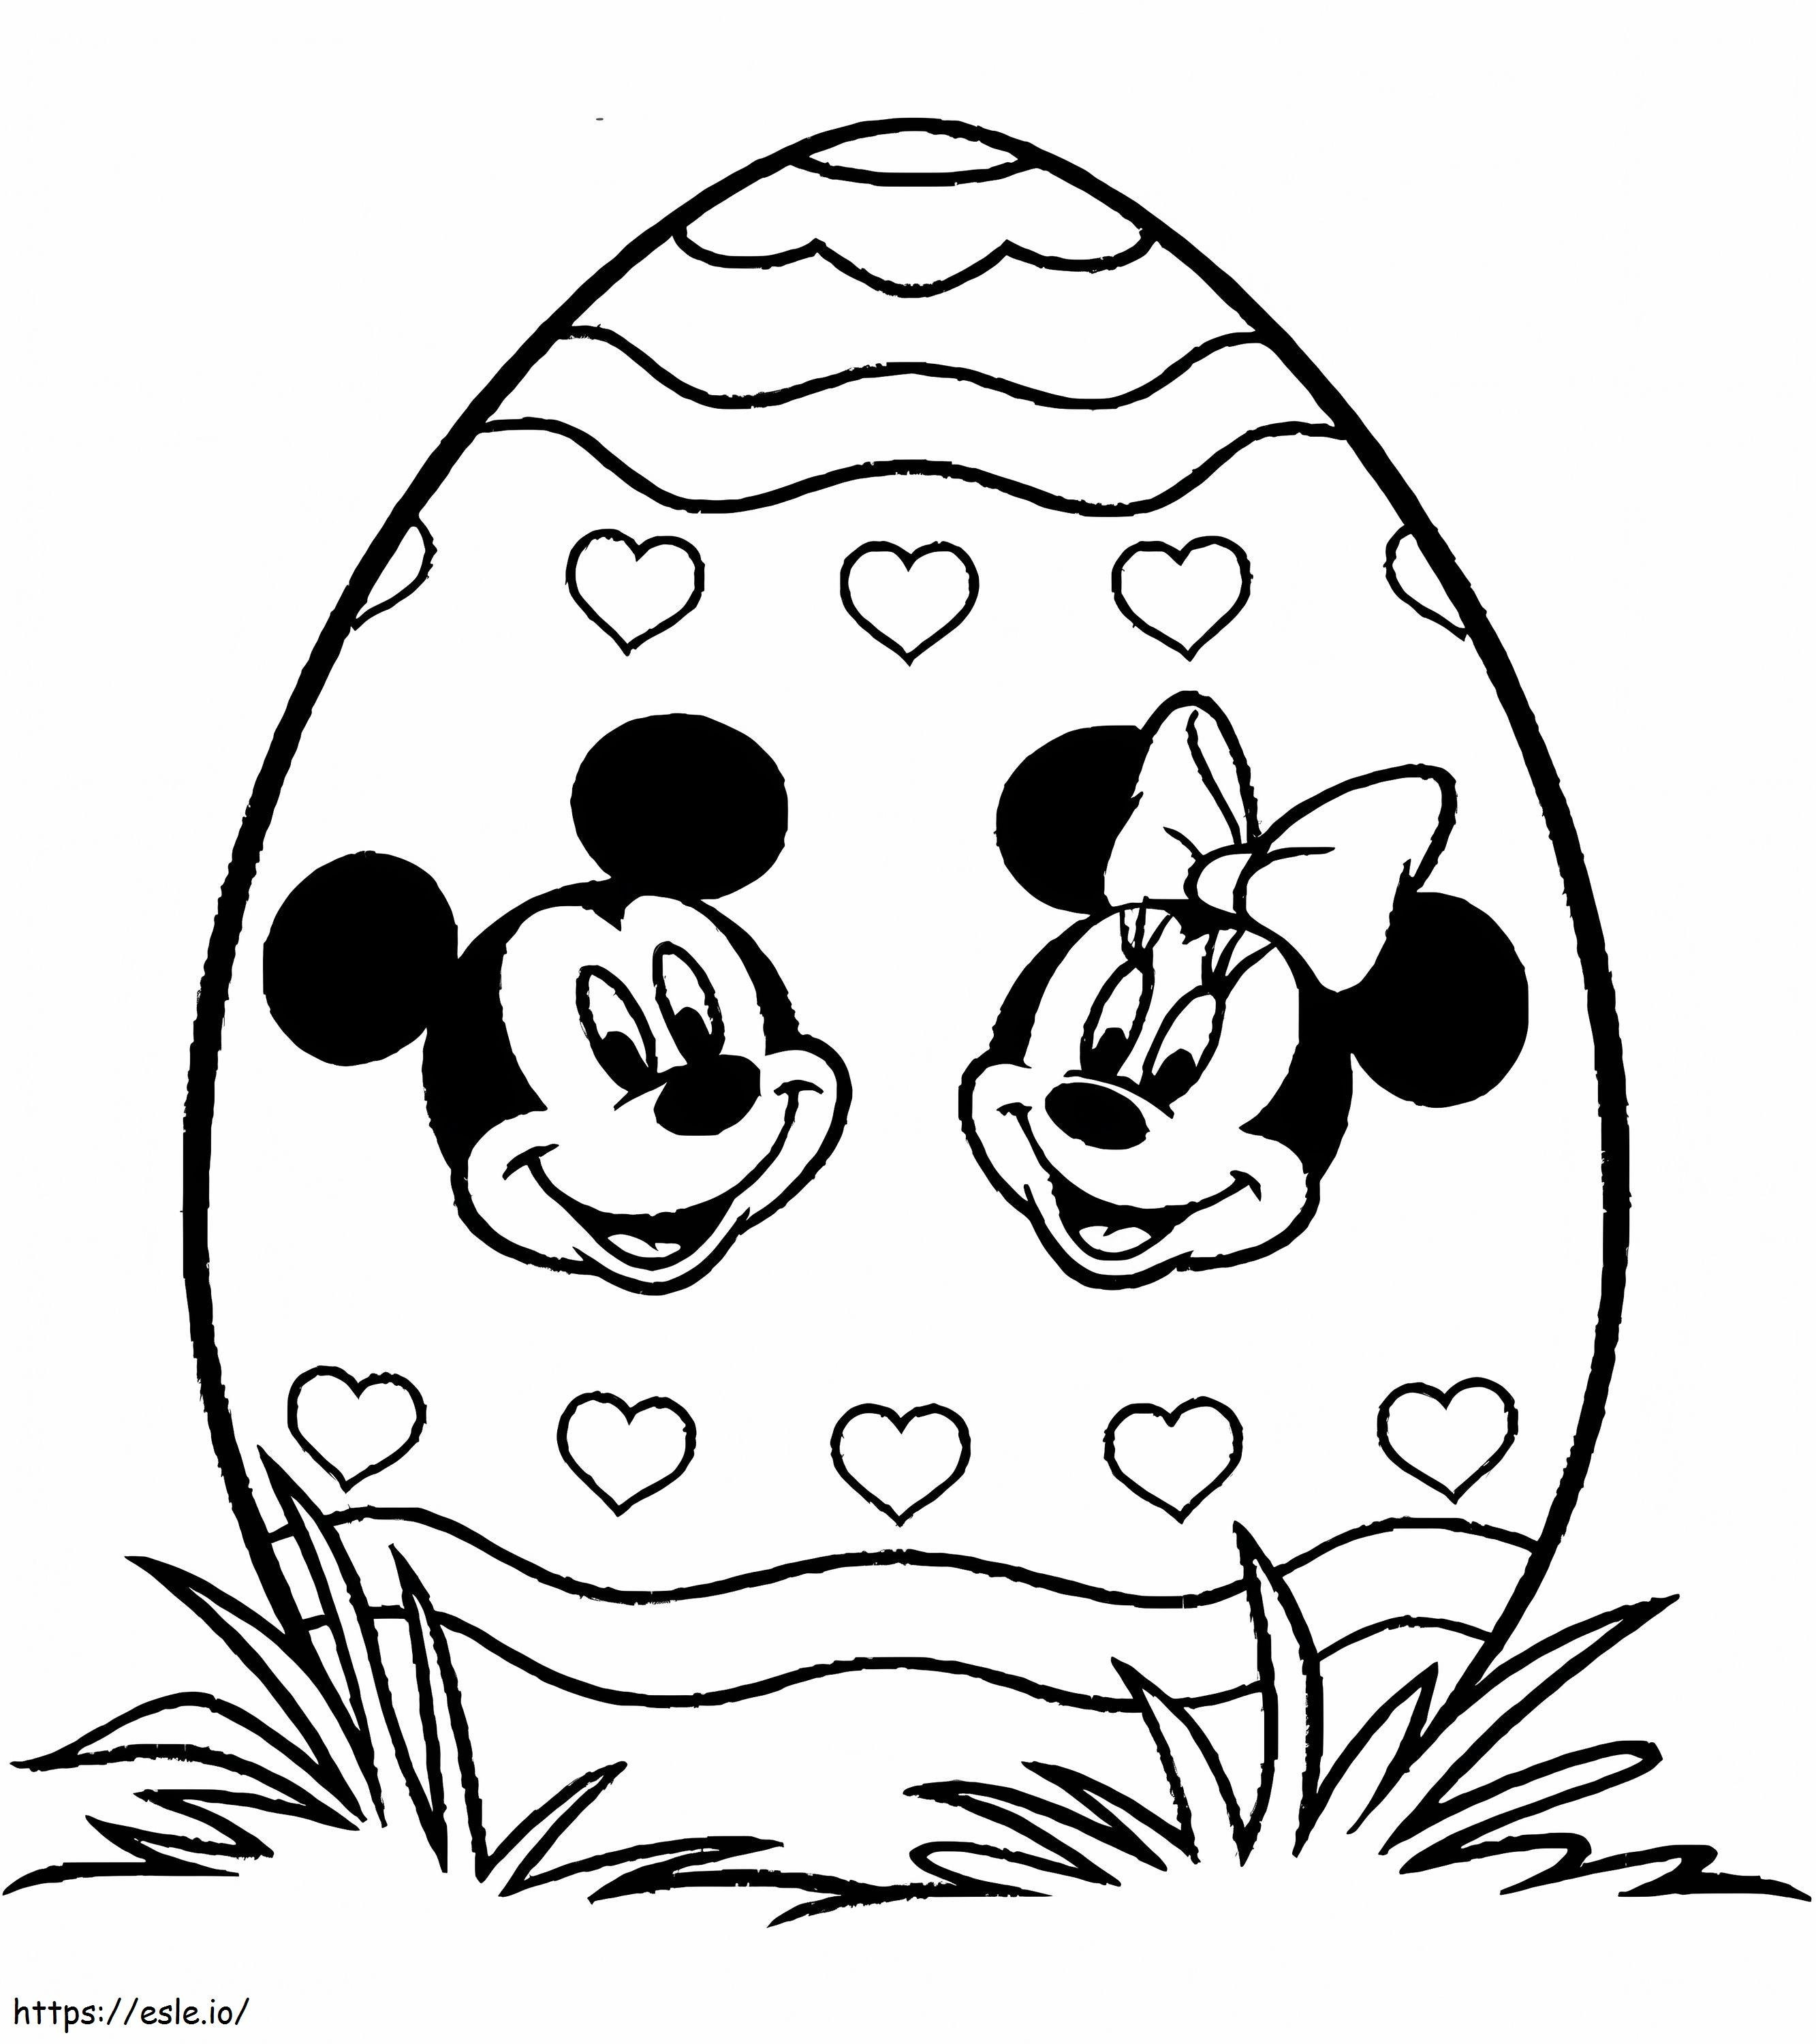 Coloriage Oeufs de Pâques imprimés avec Mickey Mouse et Minnie Mouse à imprimer dessin